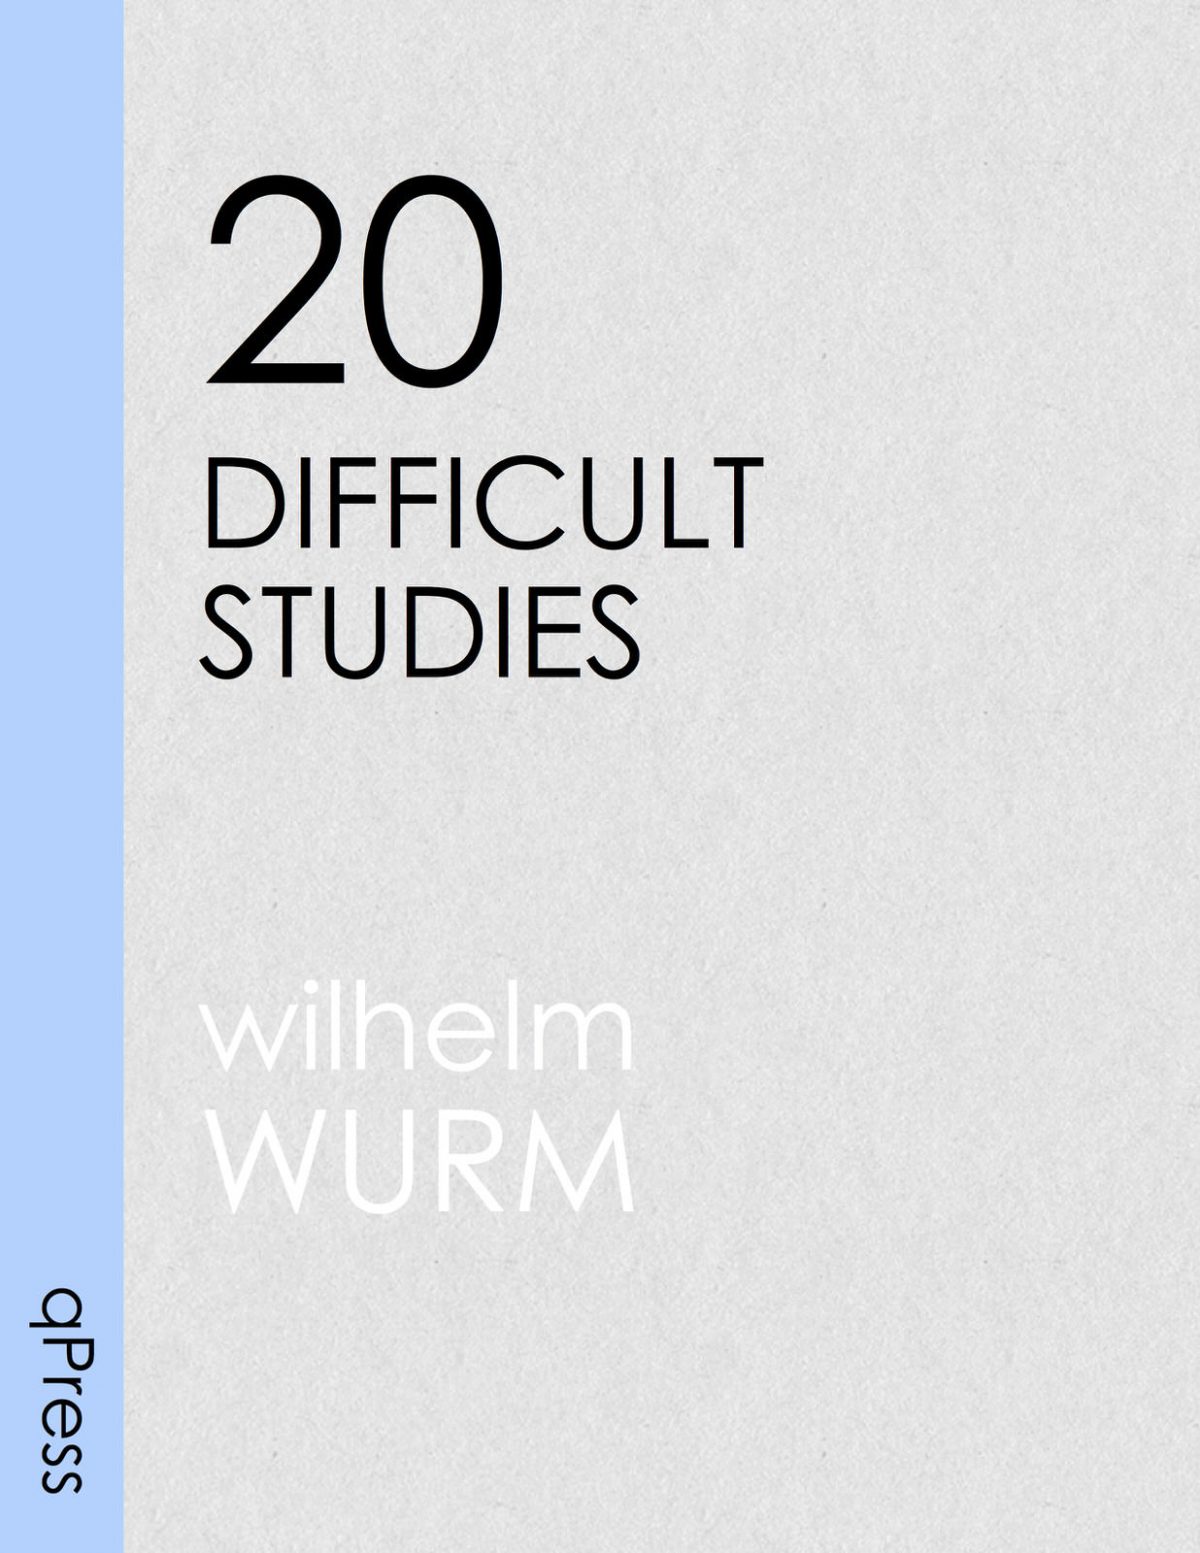 wurm-20-difficult-studies